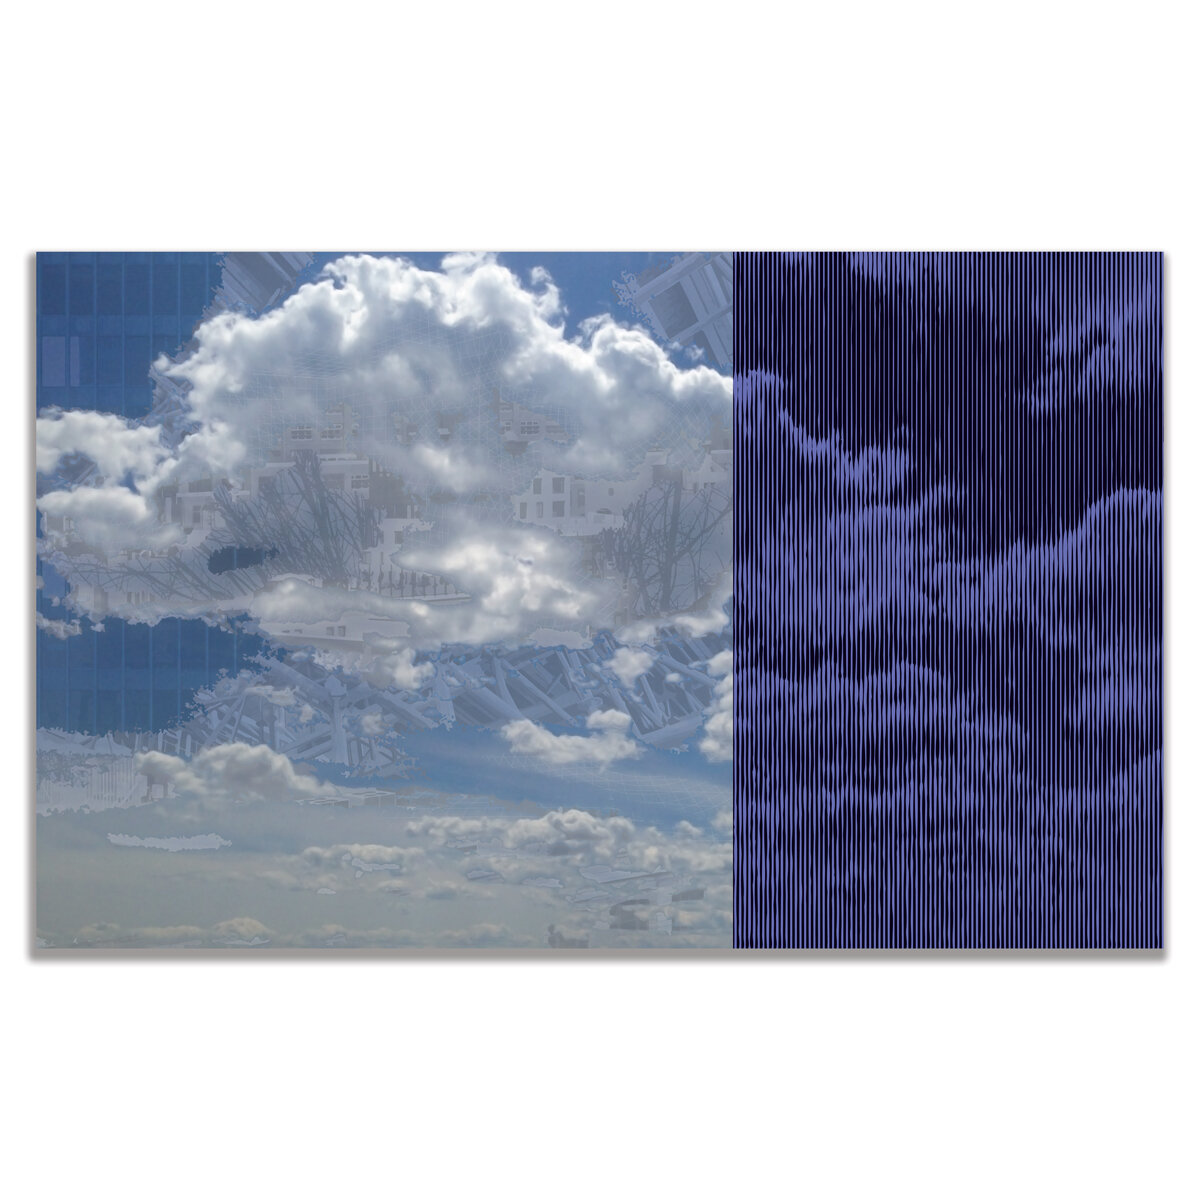 CloudScape2-1200.jpg